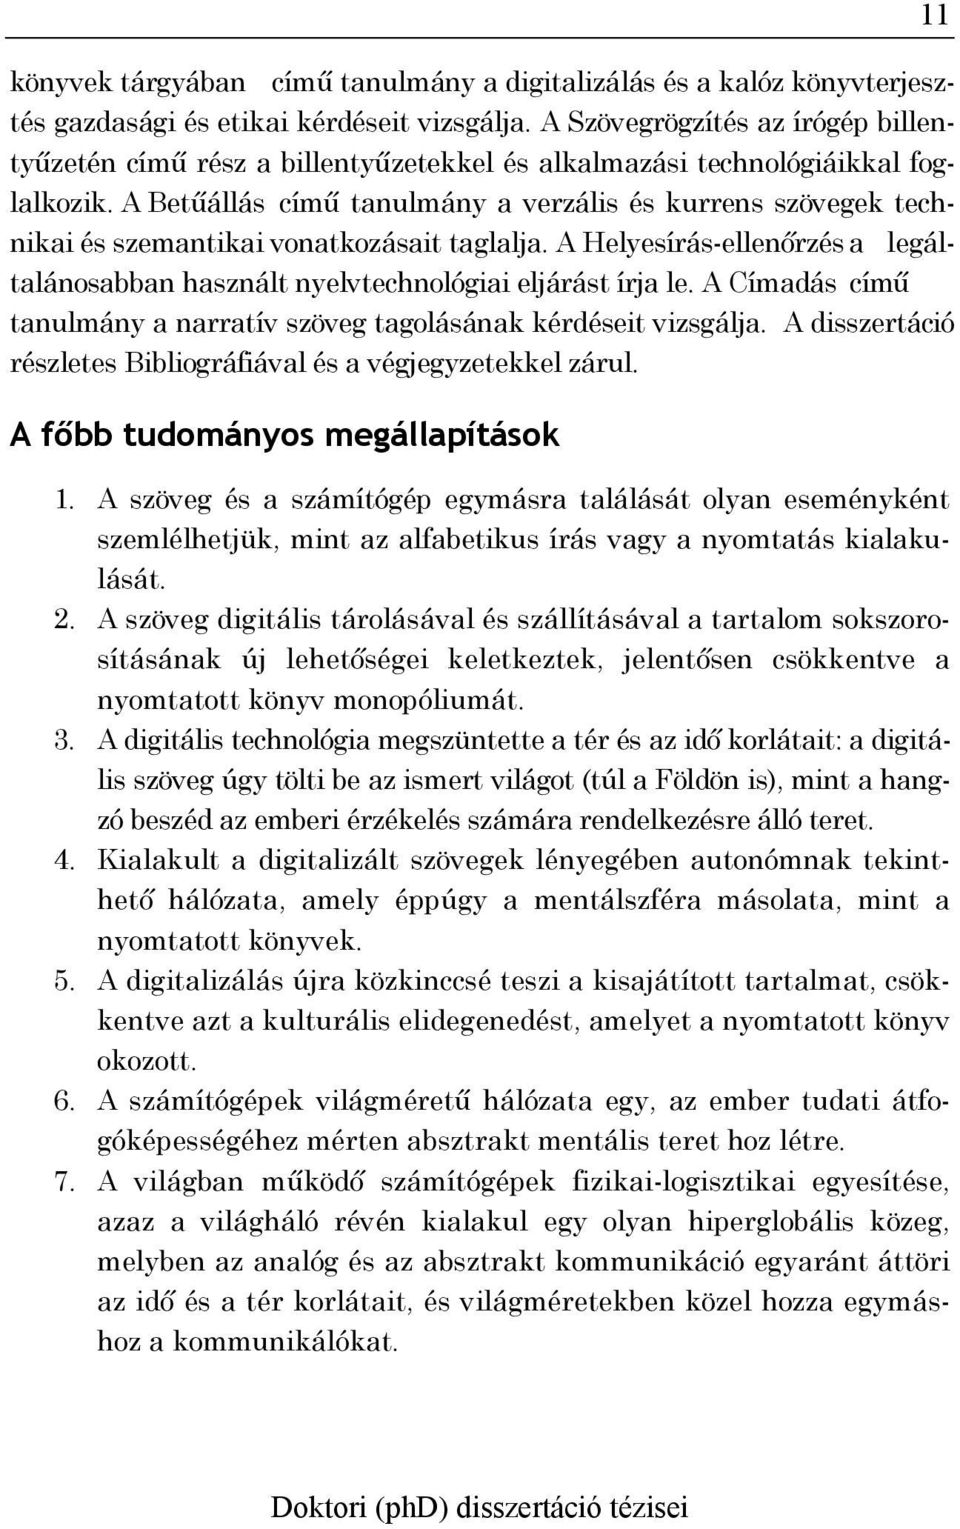 A Betűállás című tanulmány a verzális és kurrens szövegek technikai és szemantikai vonatkozásait taglalja. A Helyesírás-ellenőrzés a legáltalánosabban használt nyelvtechnológiai eljárást írja le.